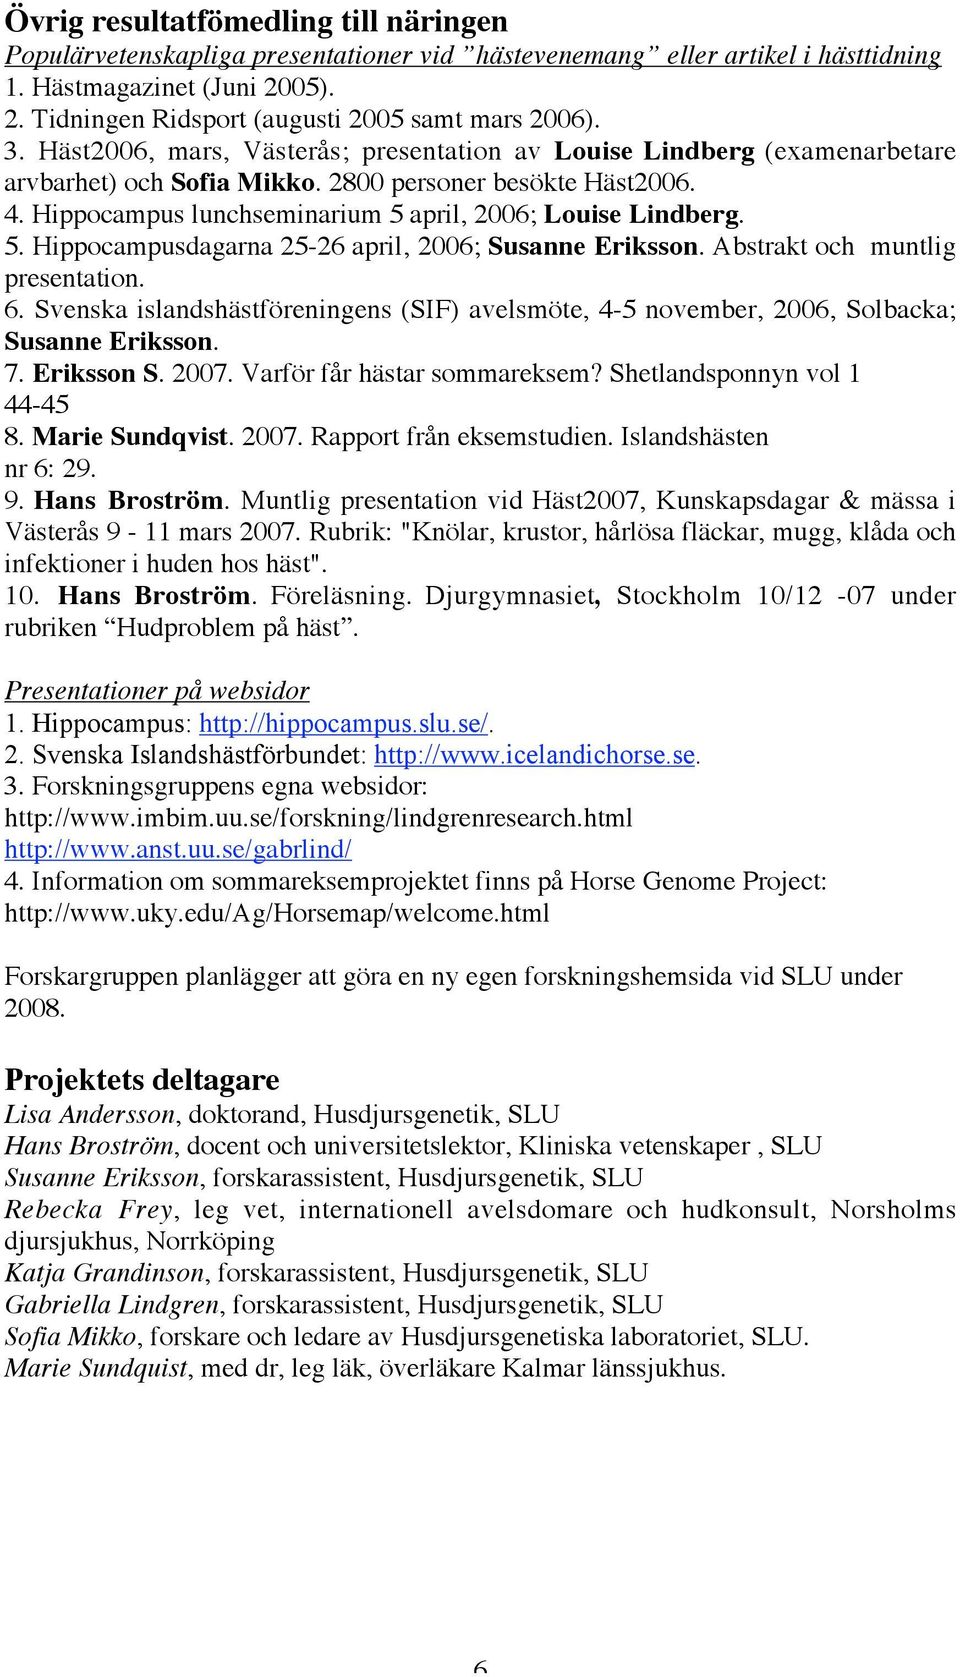 5. Hippocampusdagarna 25-26 april, 2006; Susanne Eriksson. Abstrakt och muntlig presentation. 6. Svenska islandshästföreningens (SIF) avelsmöte, 4-5 november, 2006, Solbacka; Susanne Eriksson. 7.